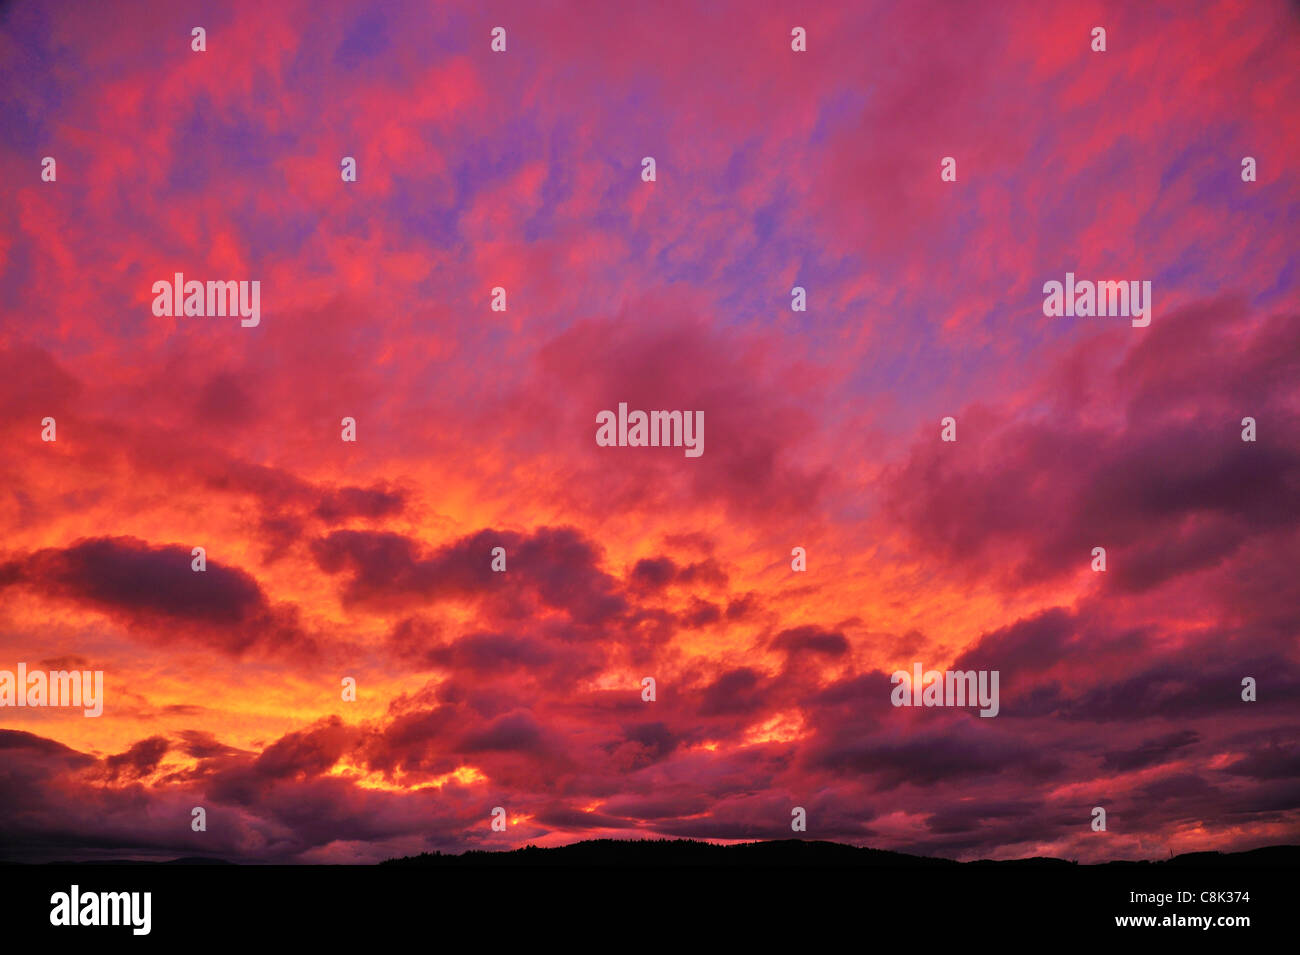 A beautiful British Columbia sunset. Stock Photo